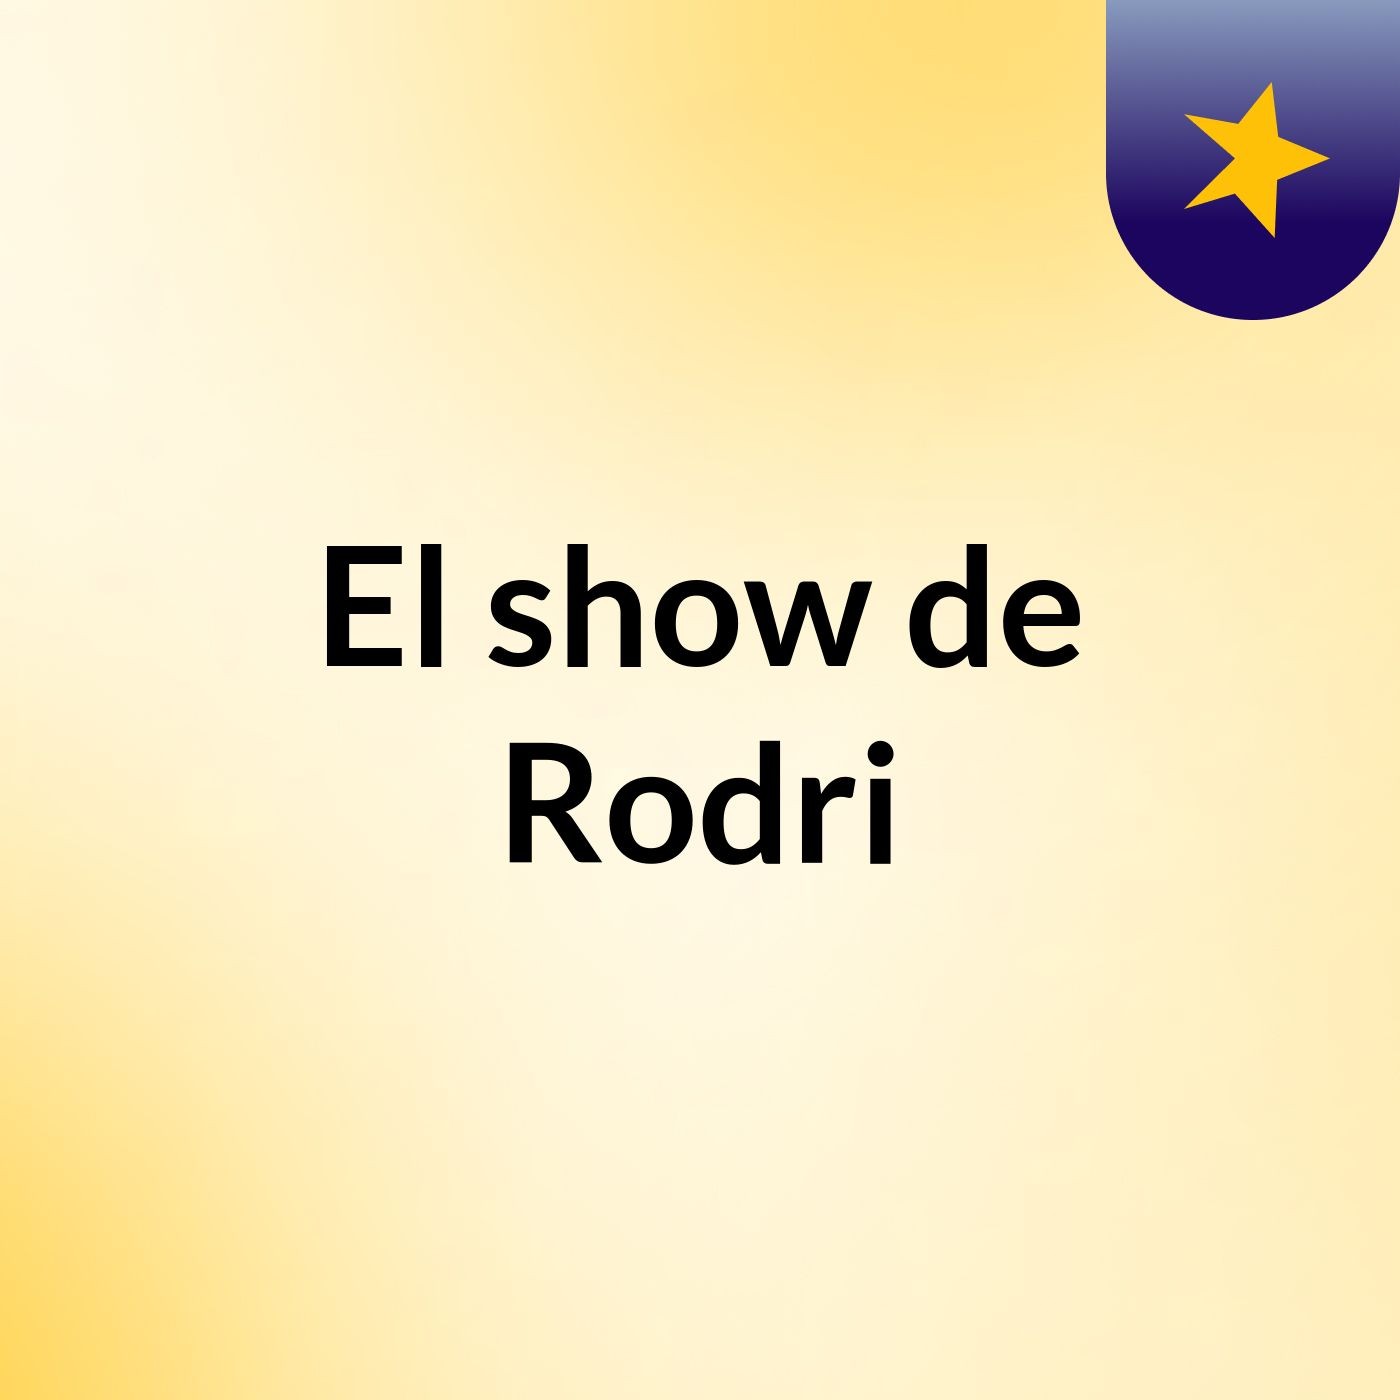 El show de Rodri